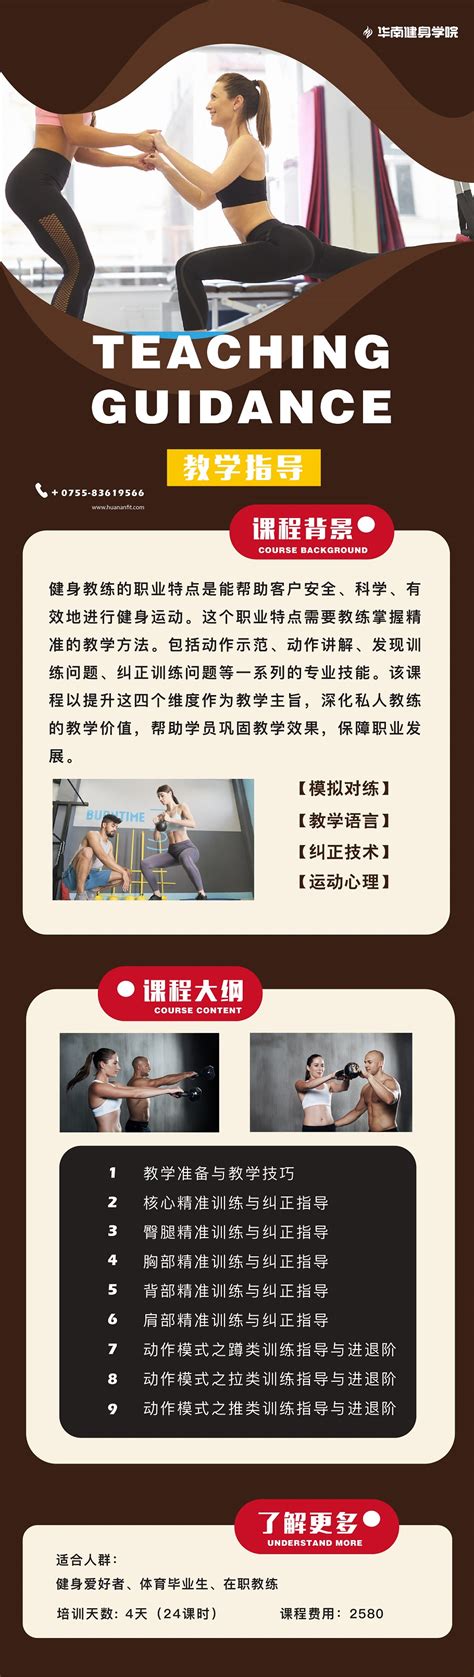 学健身来华南-华南健身学院-让您成就高薪梦想